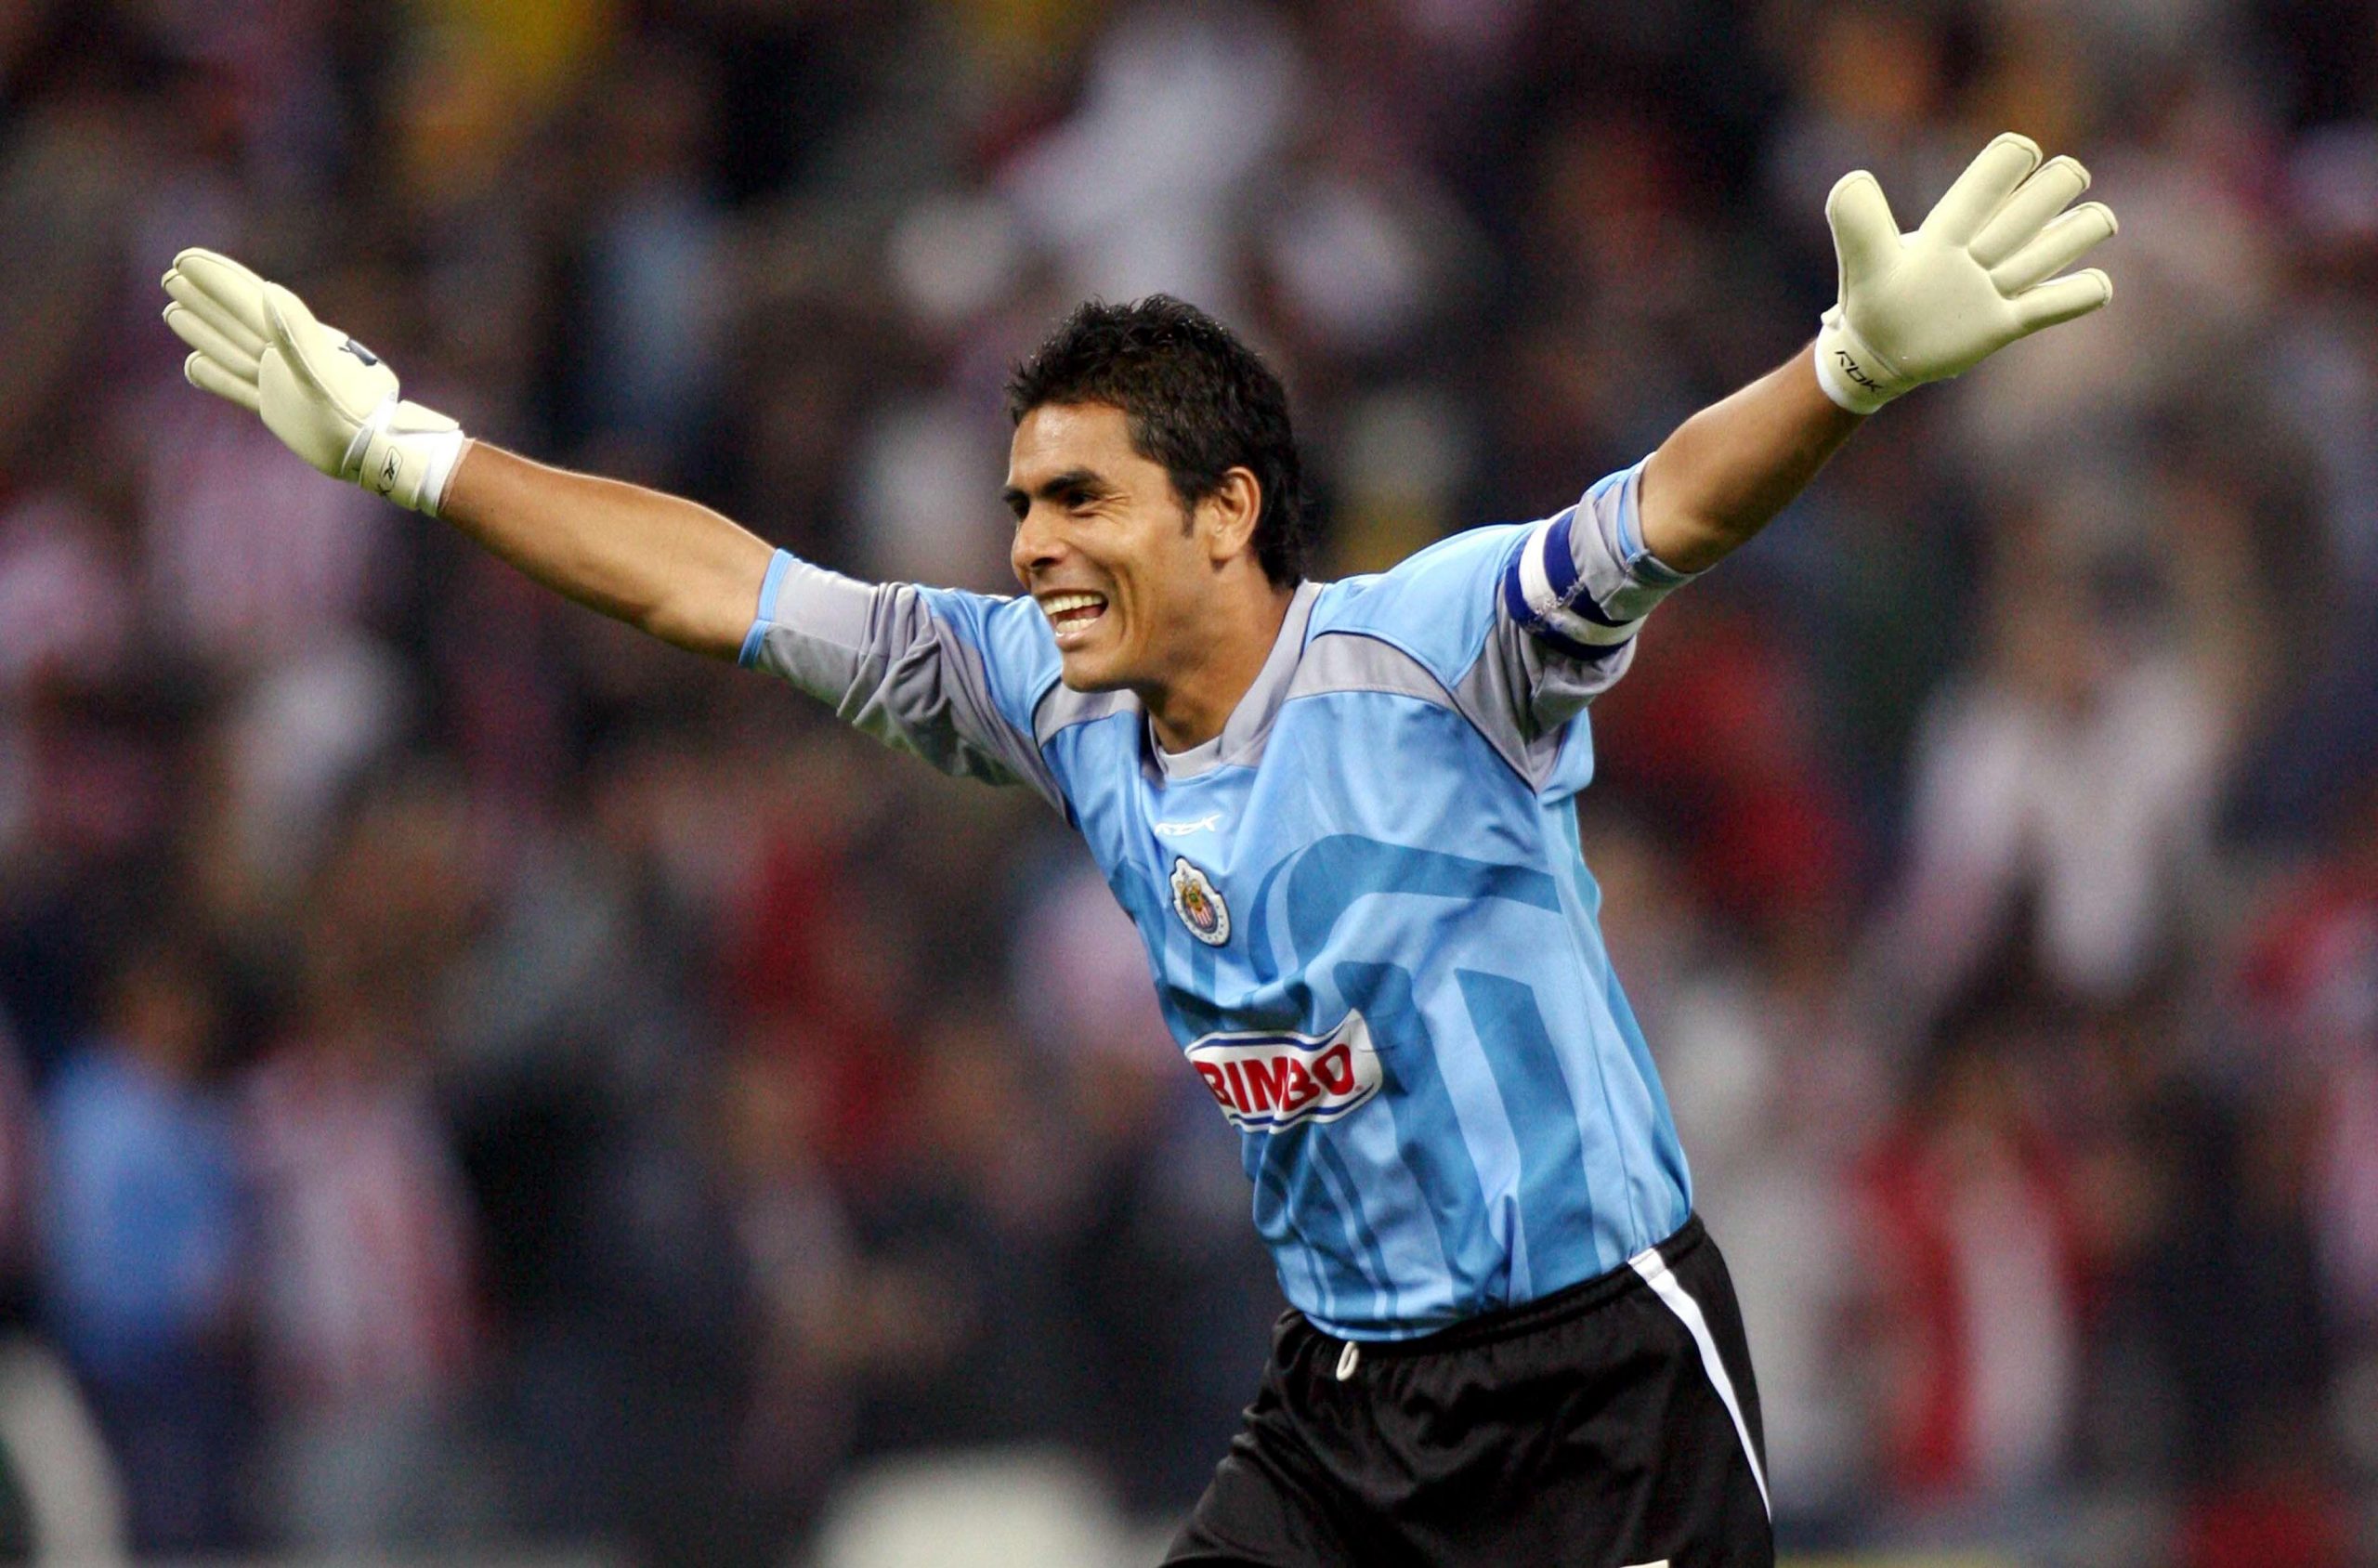 En el 2000, Oswaldo Sánchez anotó la única diana de su carrera. Lo hizo defendiendo los colores del Rebaño Sagrado y para sorpresa de todos, fue un golazo para clasificarlos a semifinales.